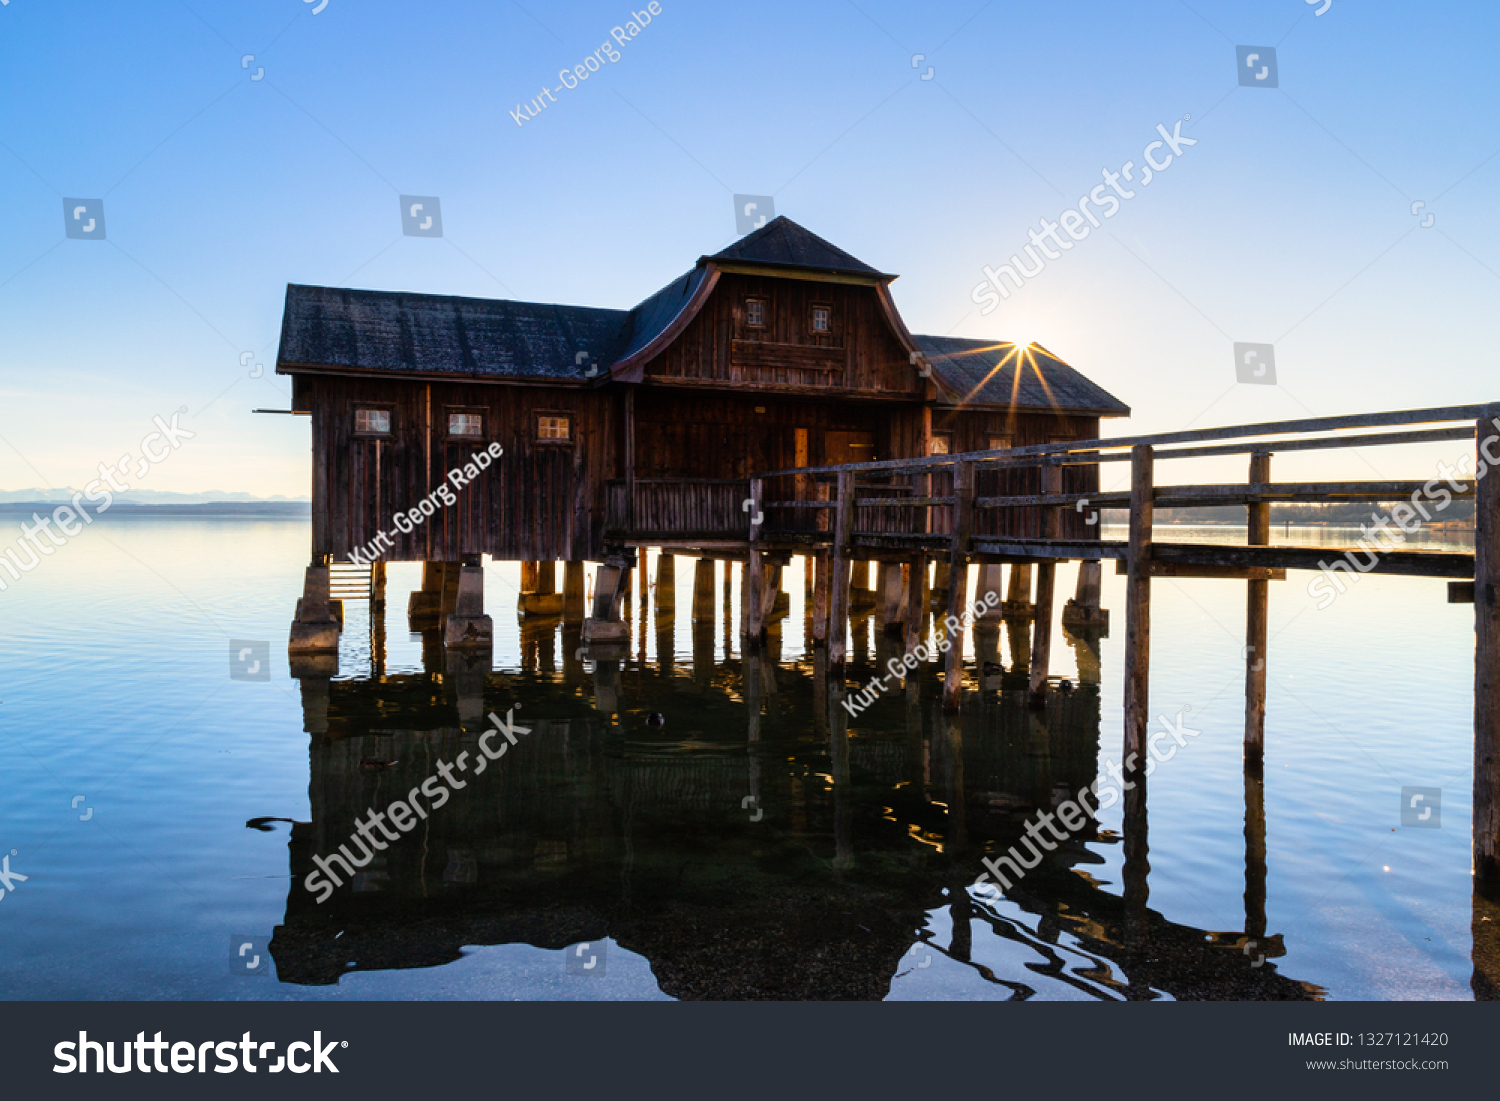 A boatshouse at a lake at sunset #1327121420